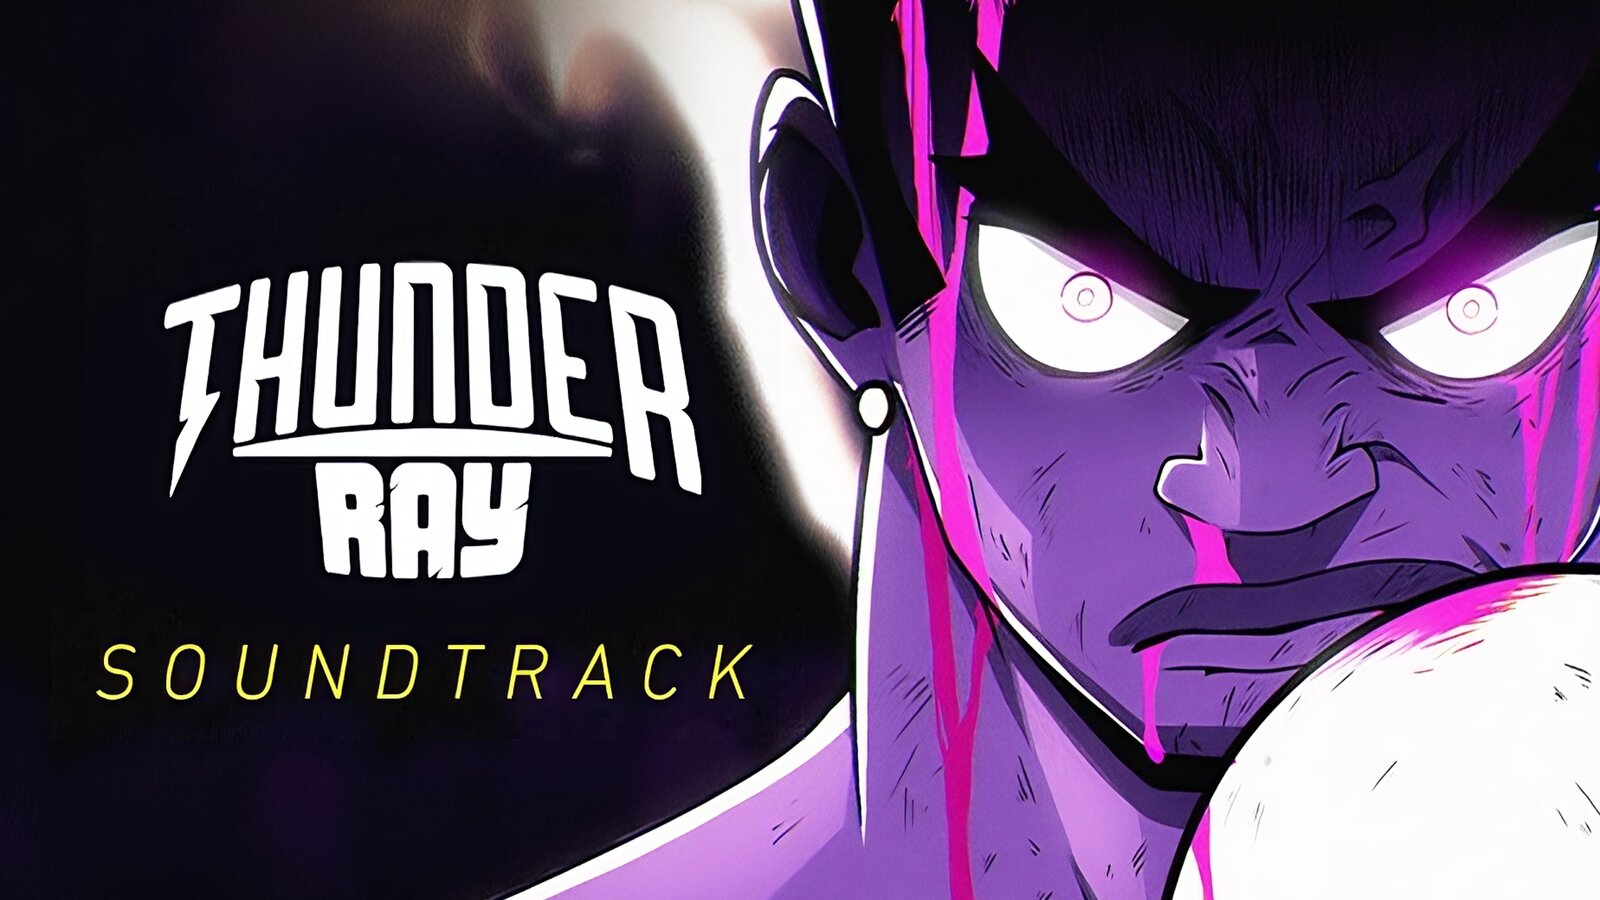 Thunder Ray - Soundtrack